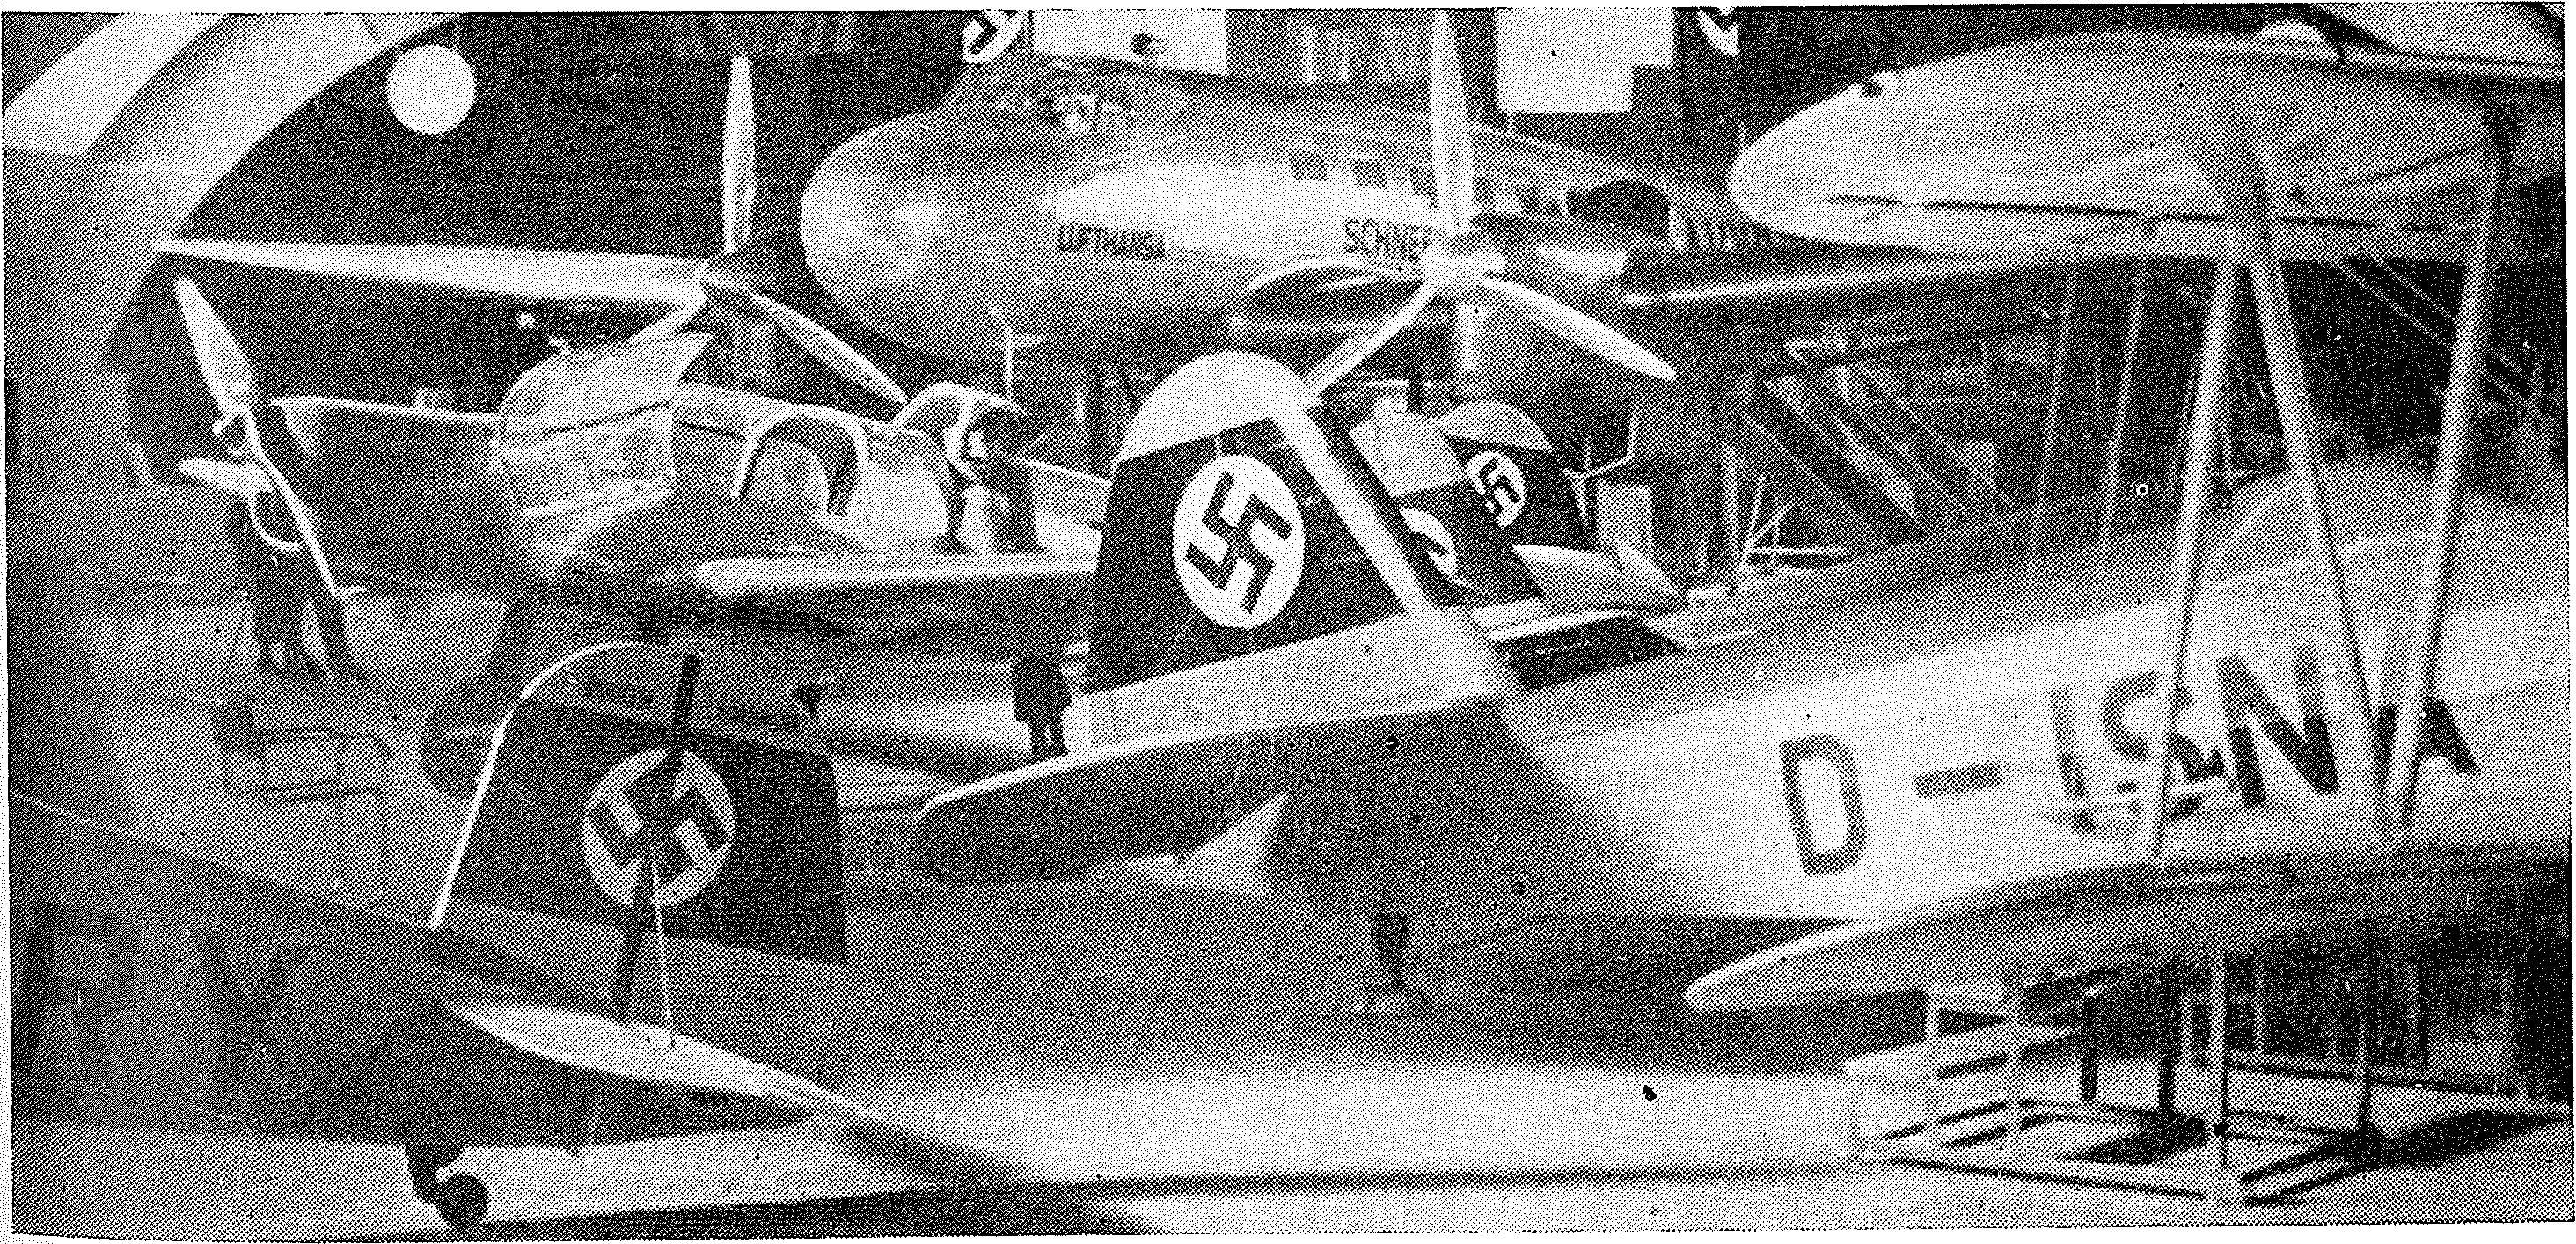 Luftfahrt und Luftverkehr sowie Luftwaffe im Dritten Reich 1936